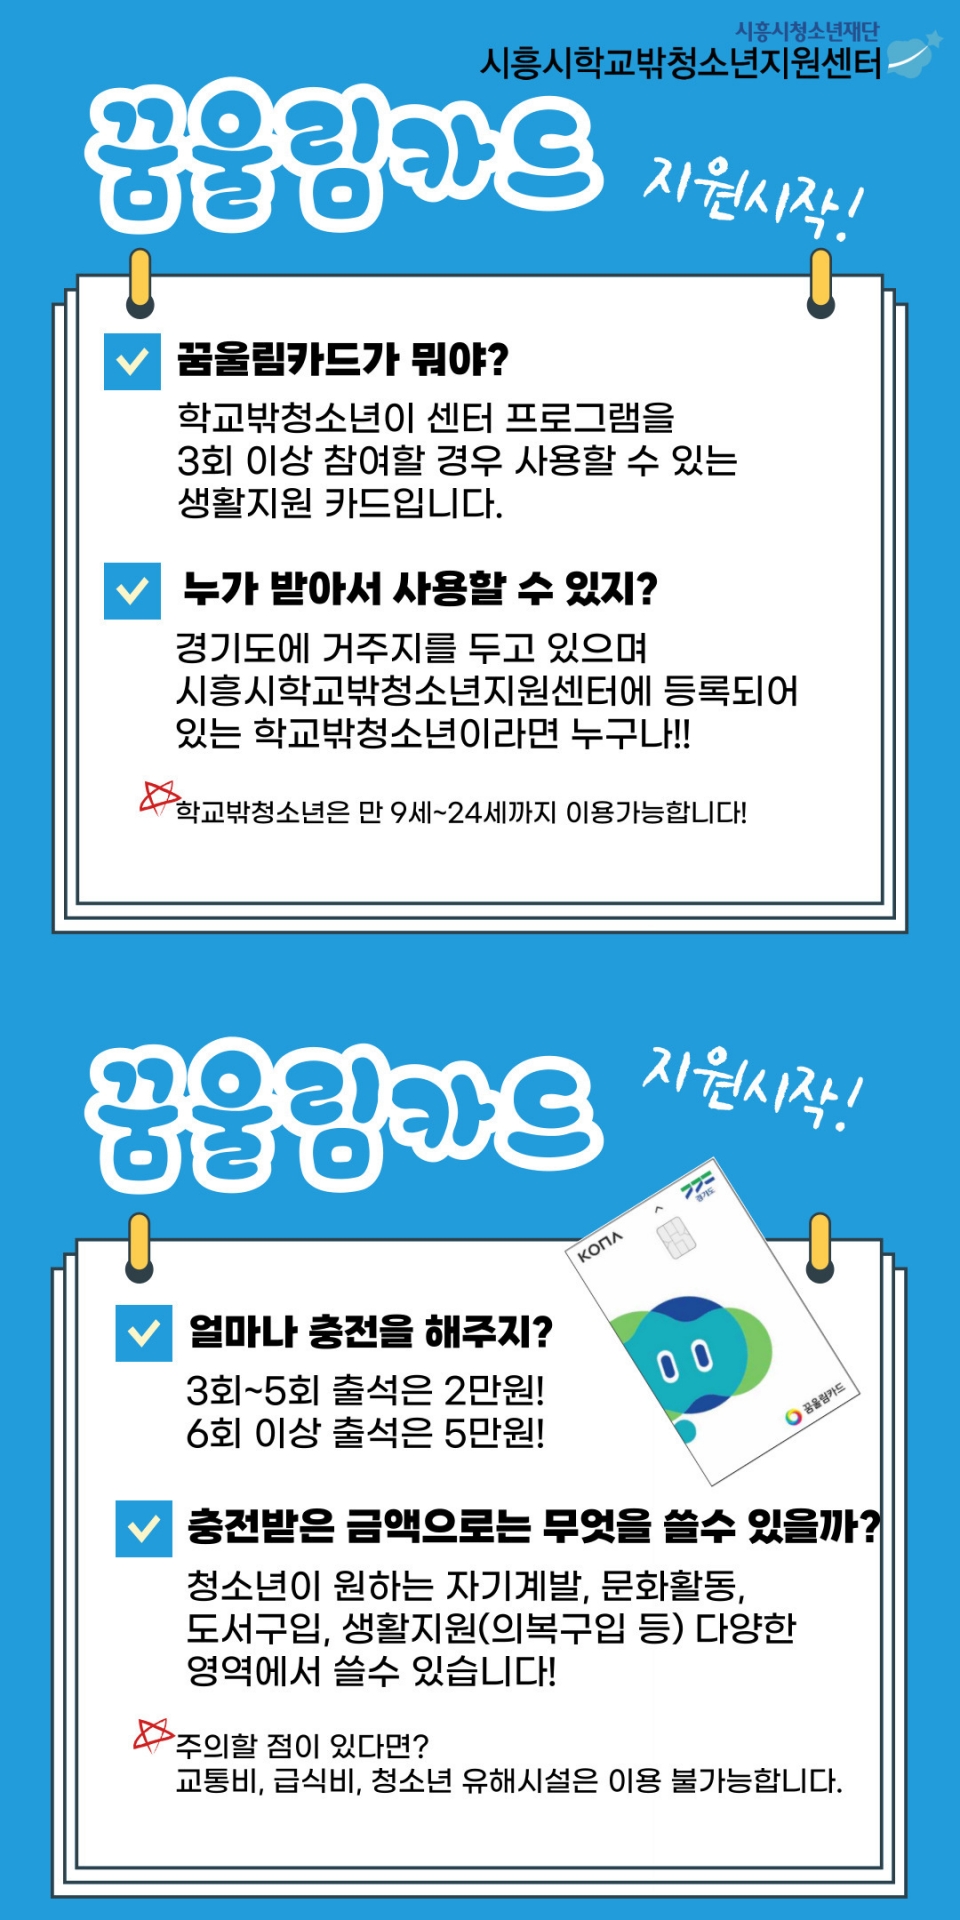 학교밖청소년 위한 꿈울림카드 홍보지. / 사진 = 시흥시 제공